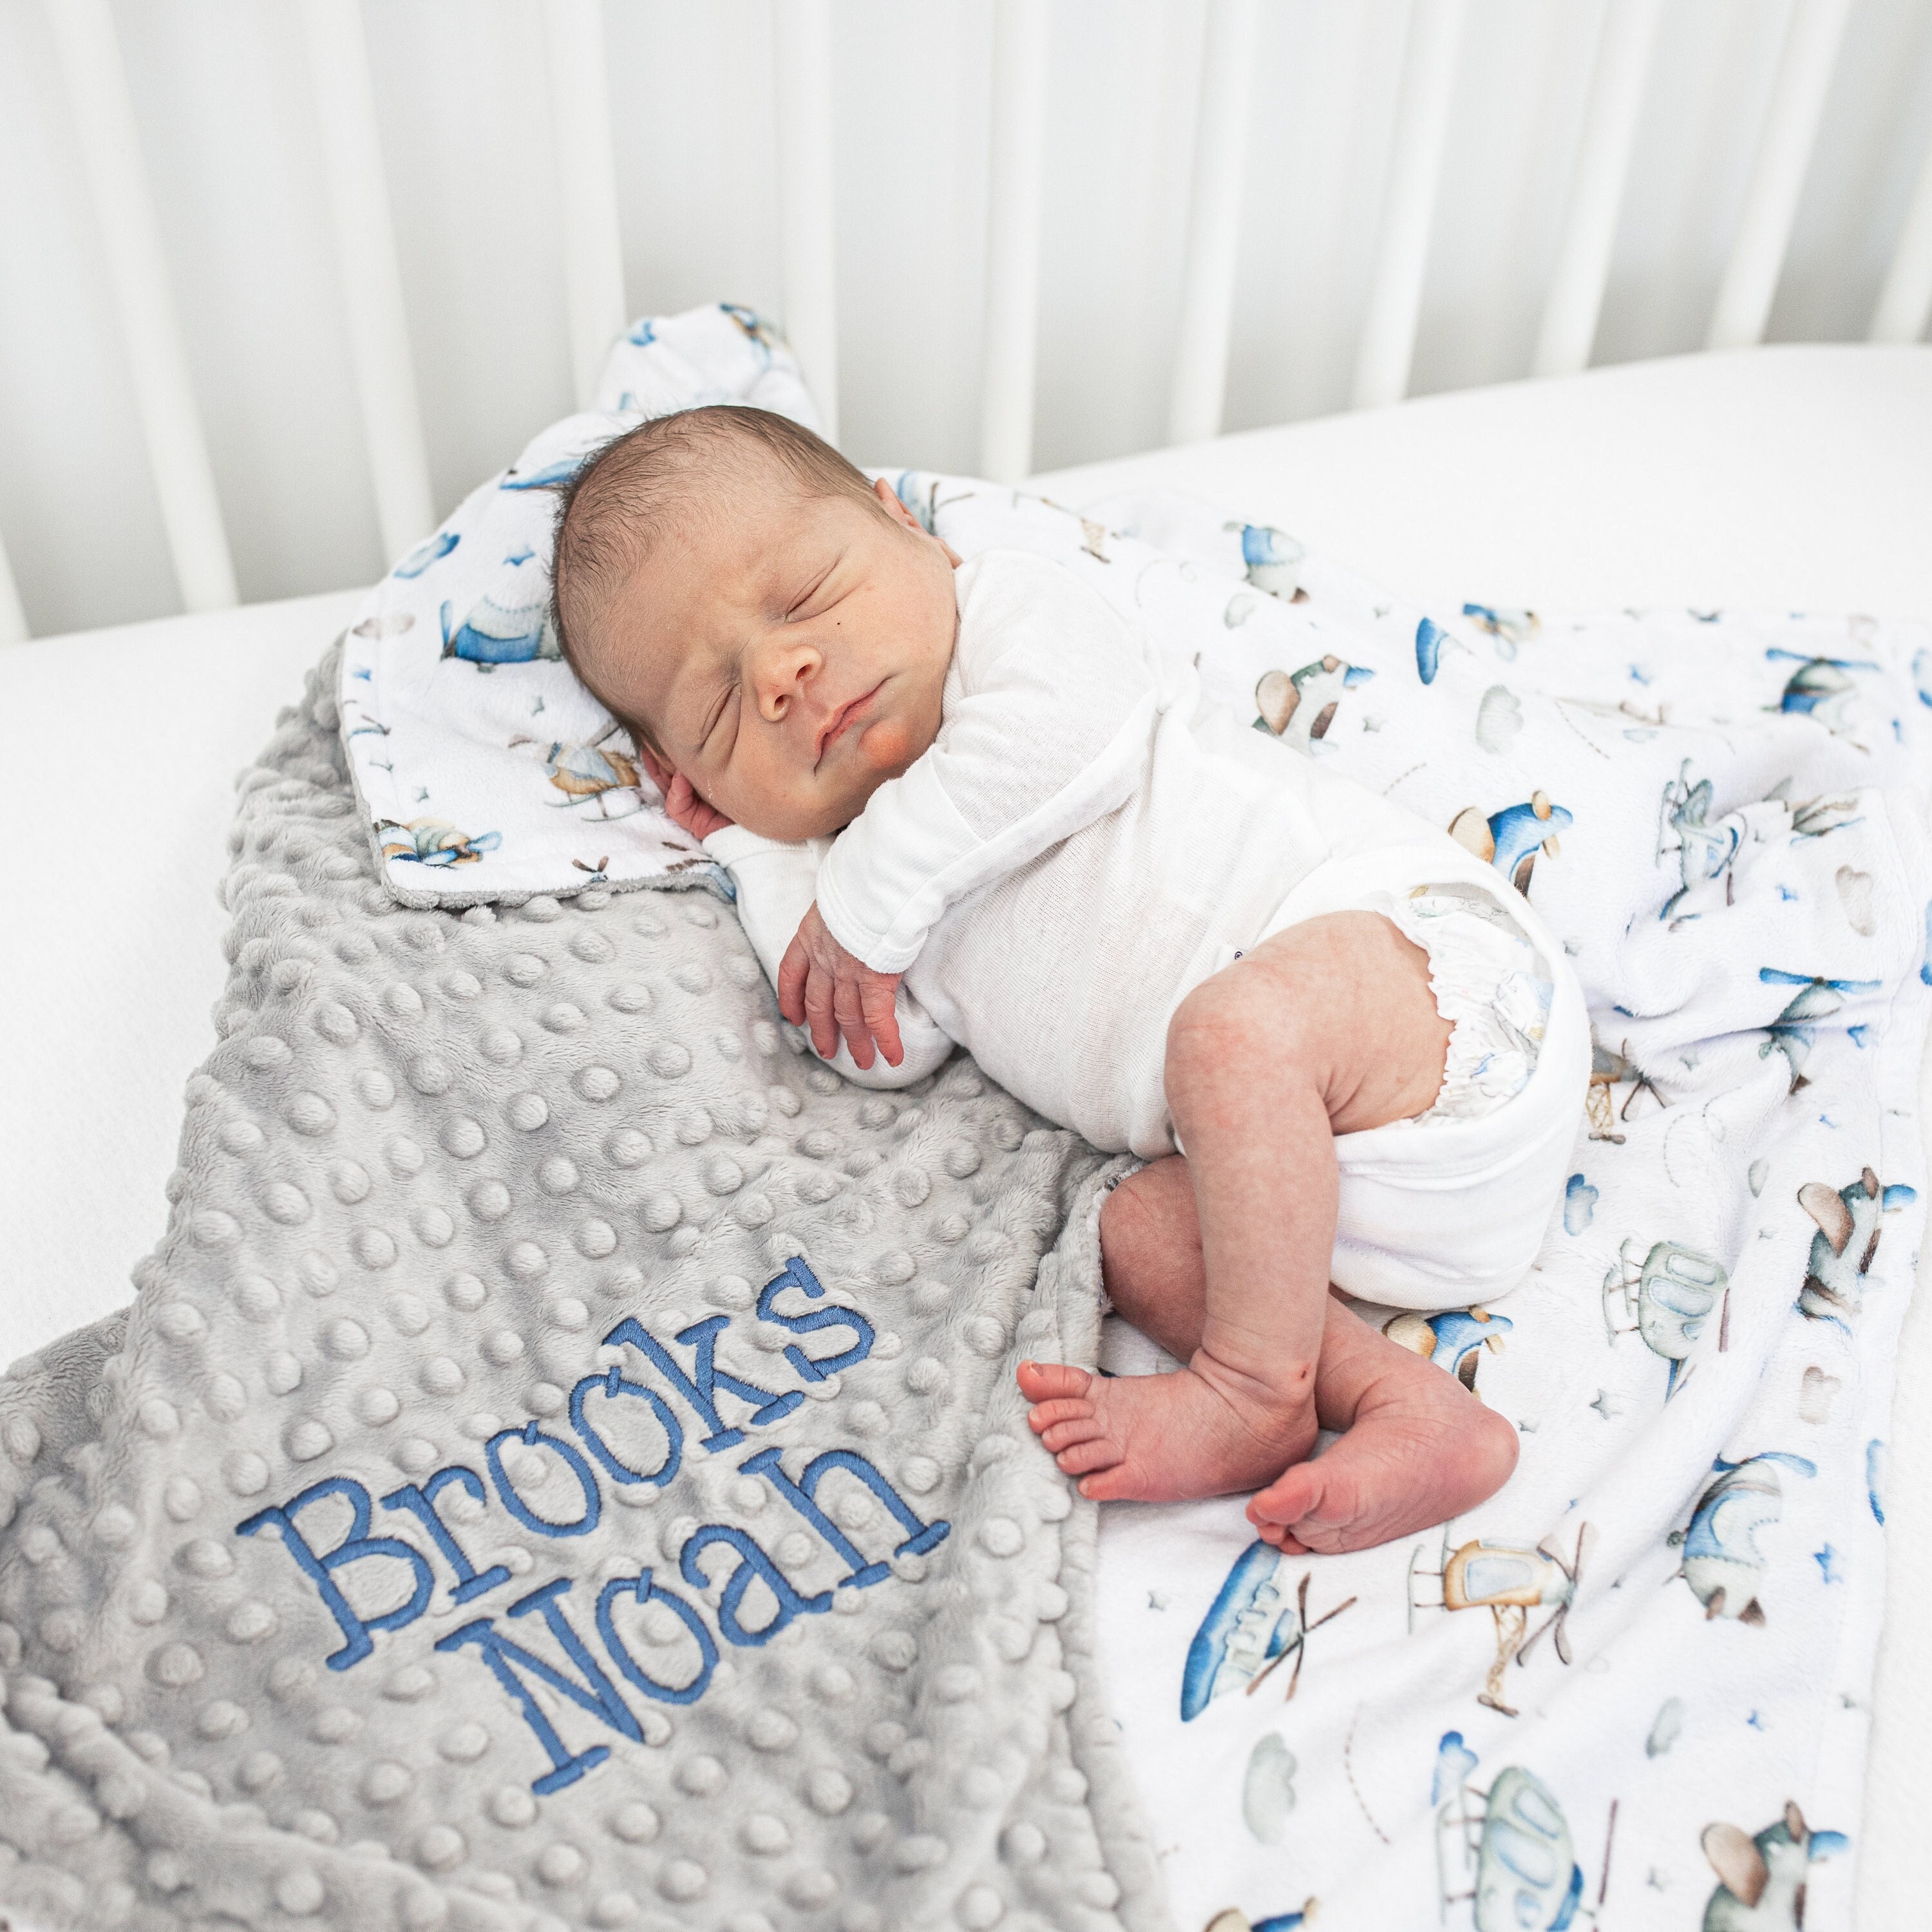 Handmade Crochet Baby Blanket for Boy Blue, Brown, White 